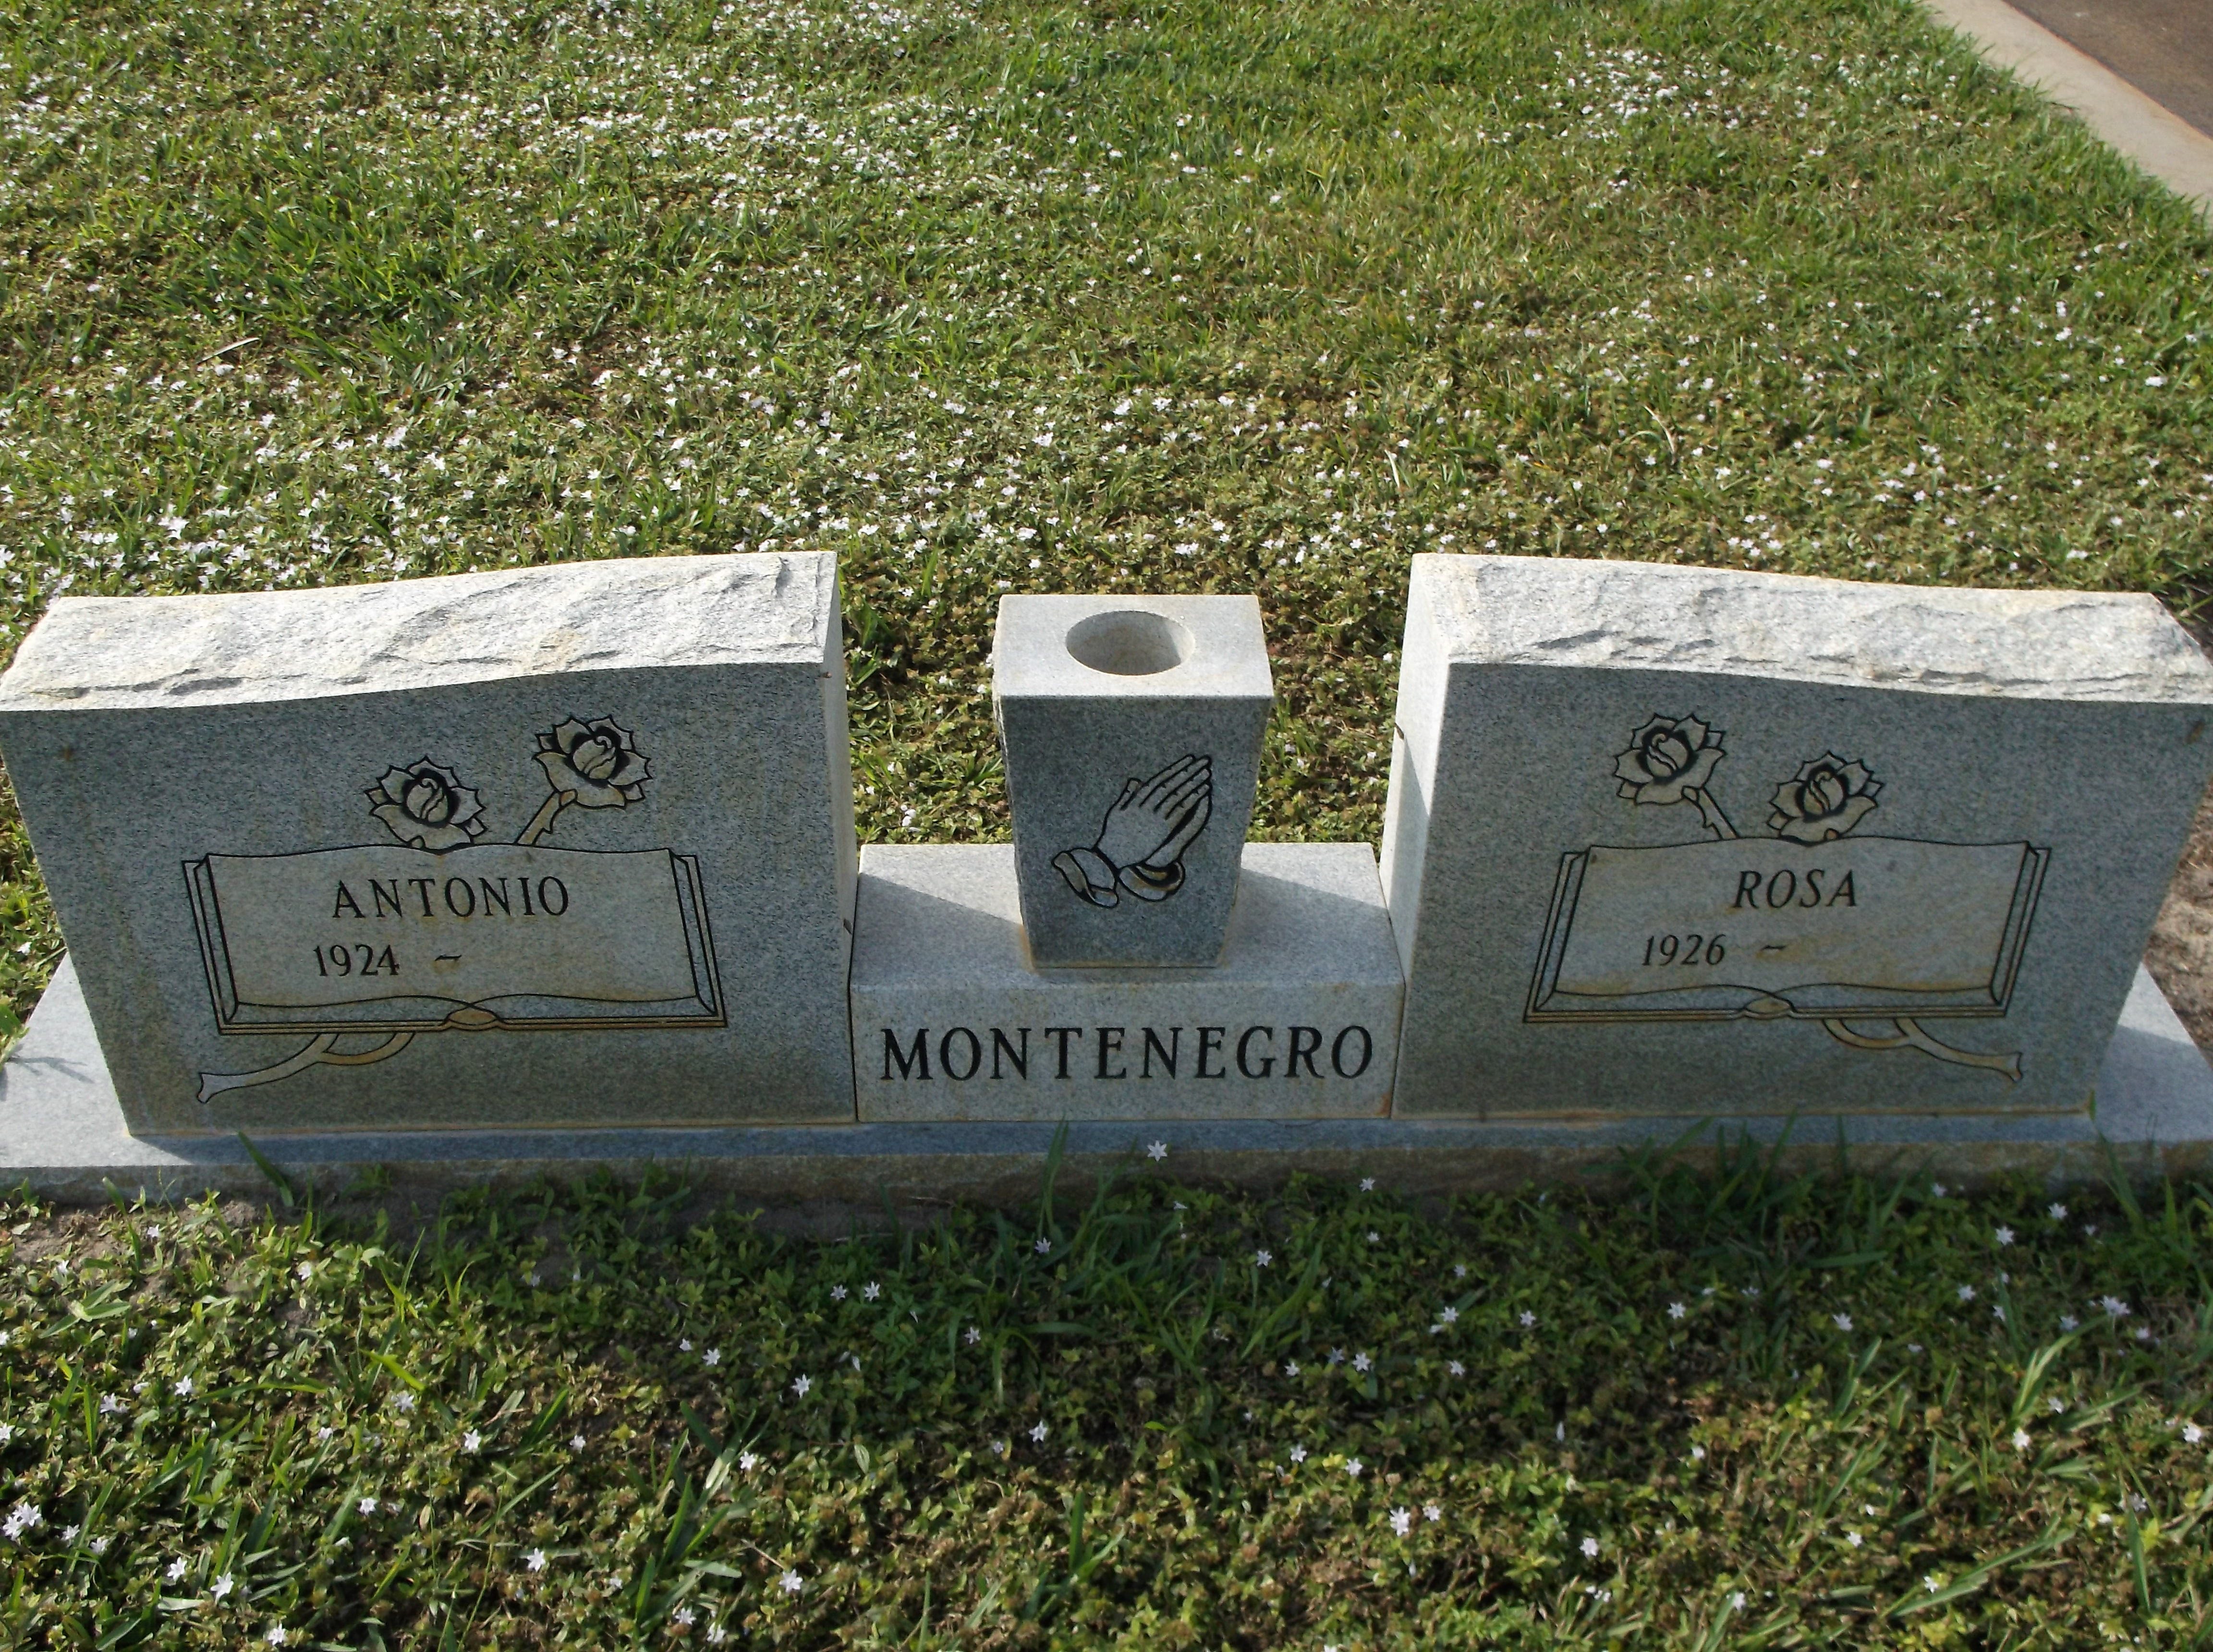 Antonio Montenegro